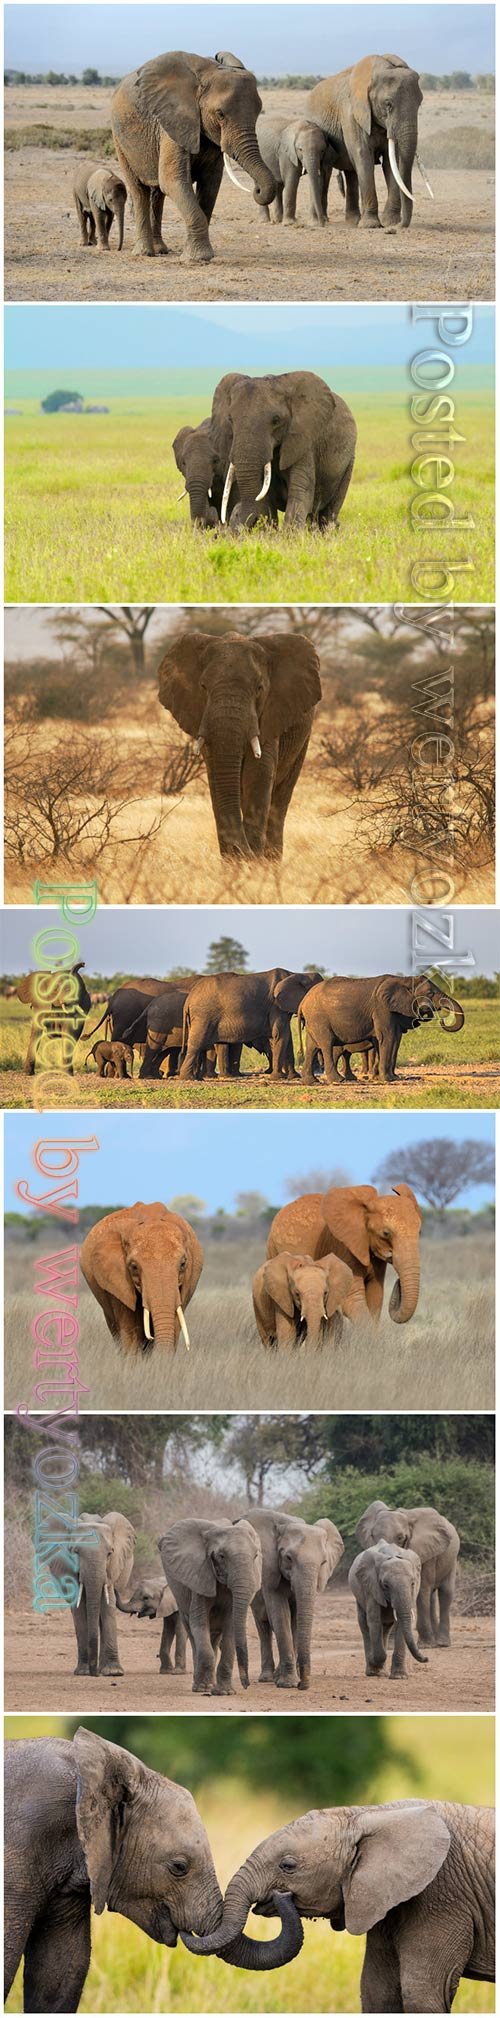 African elephants beautiful stock photo